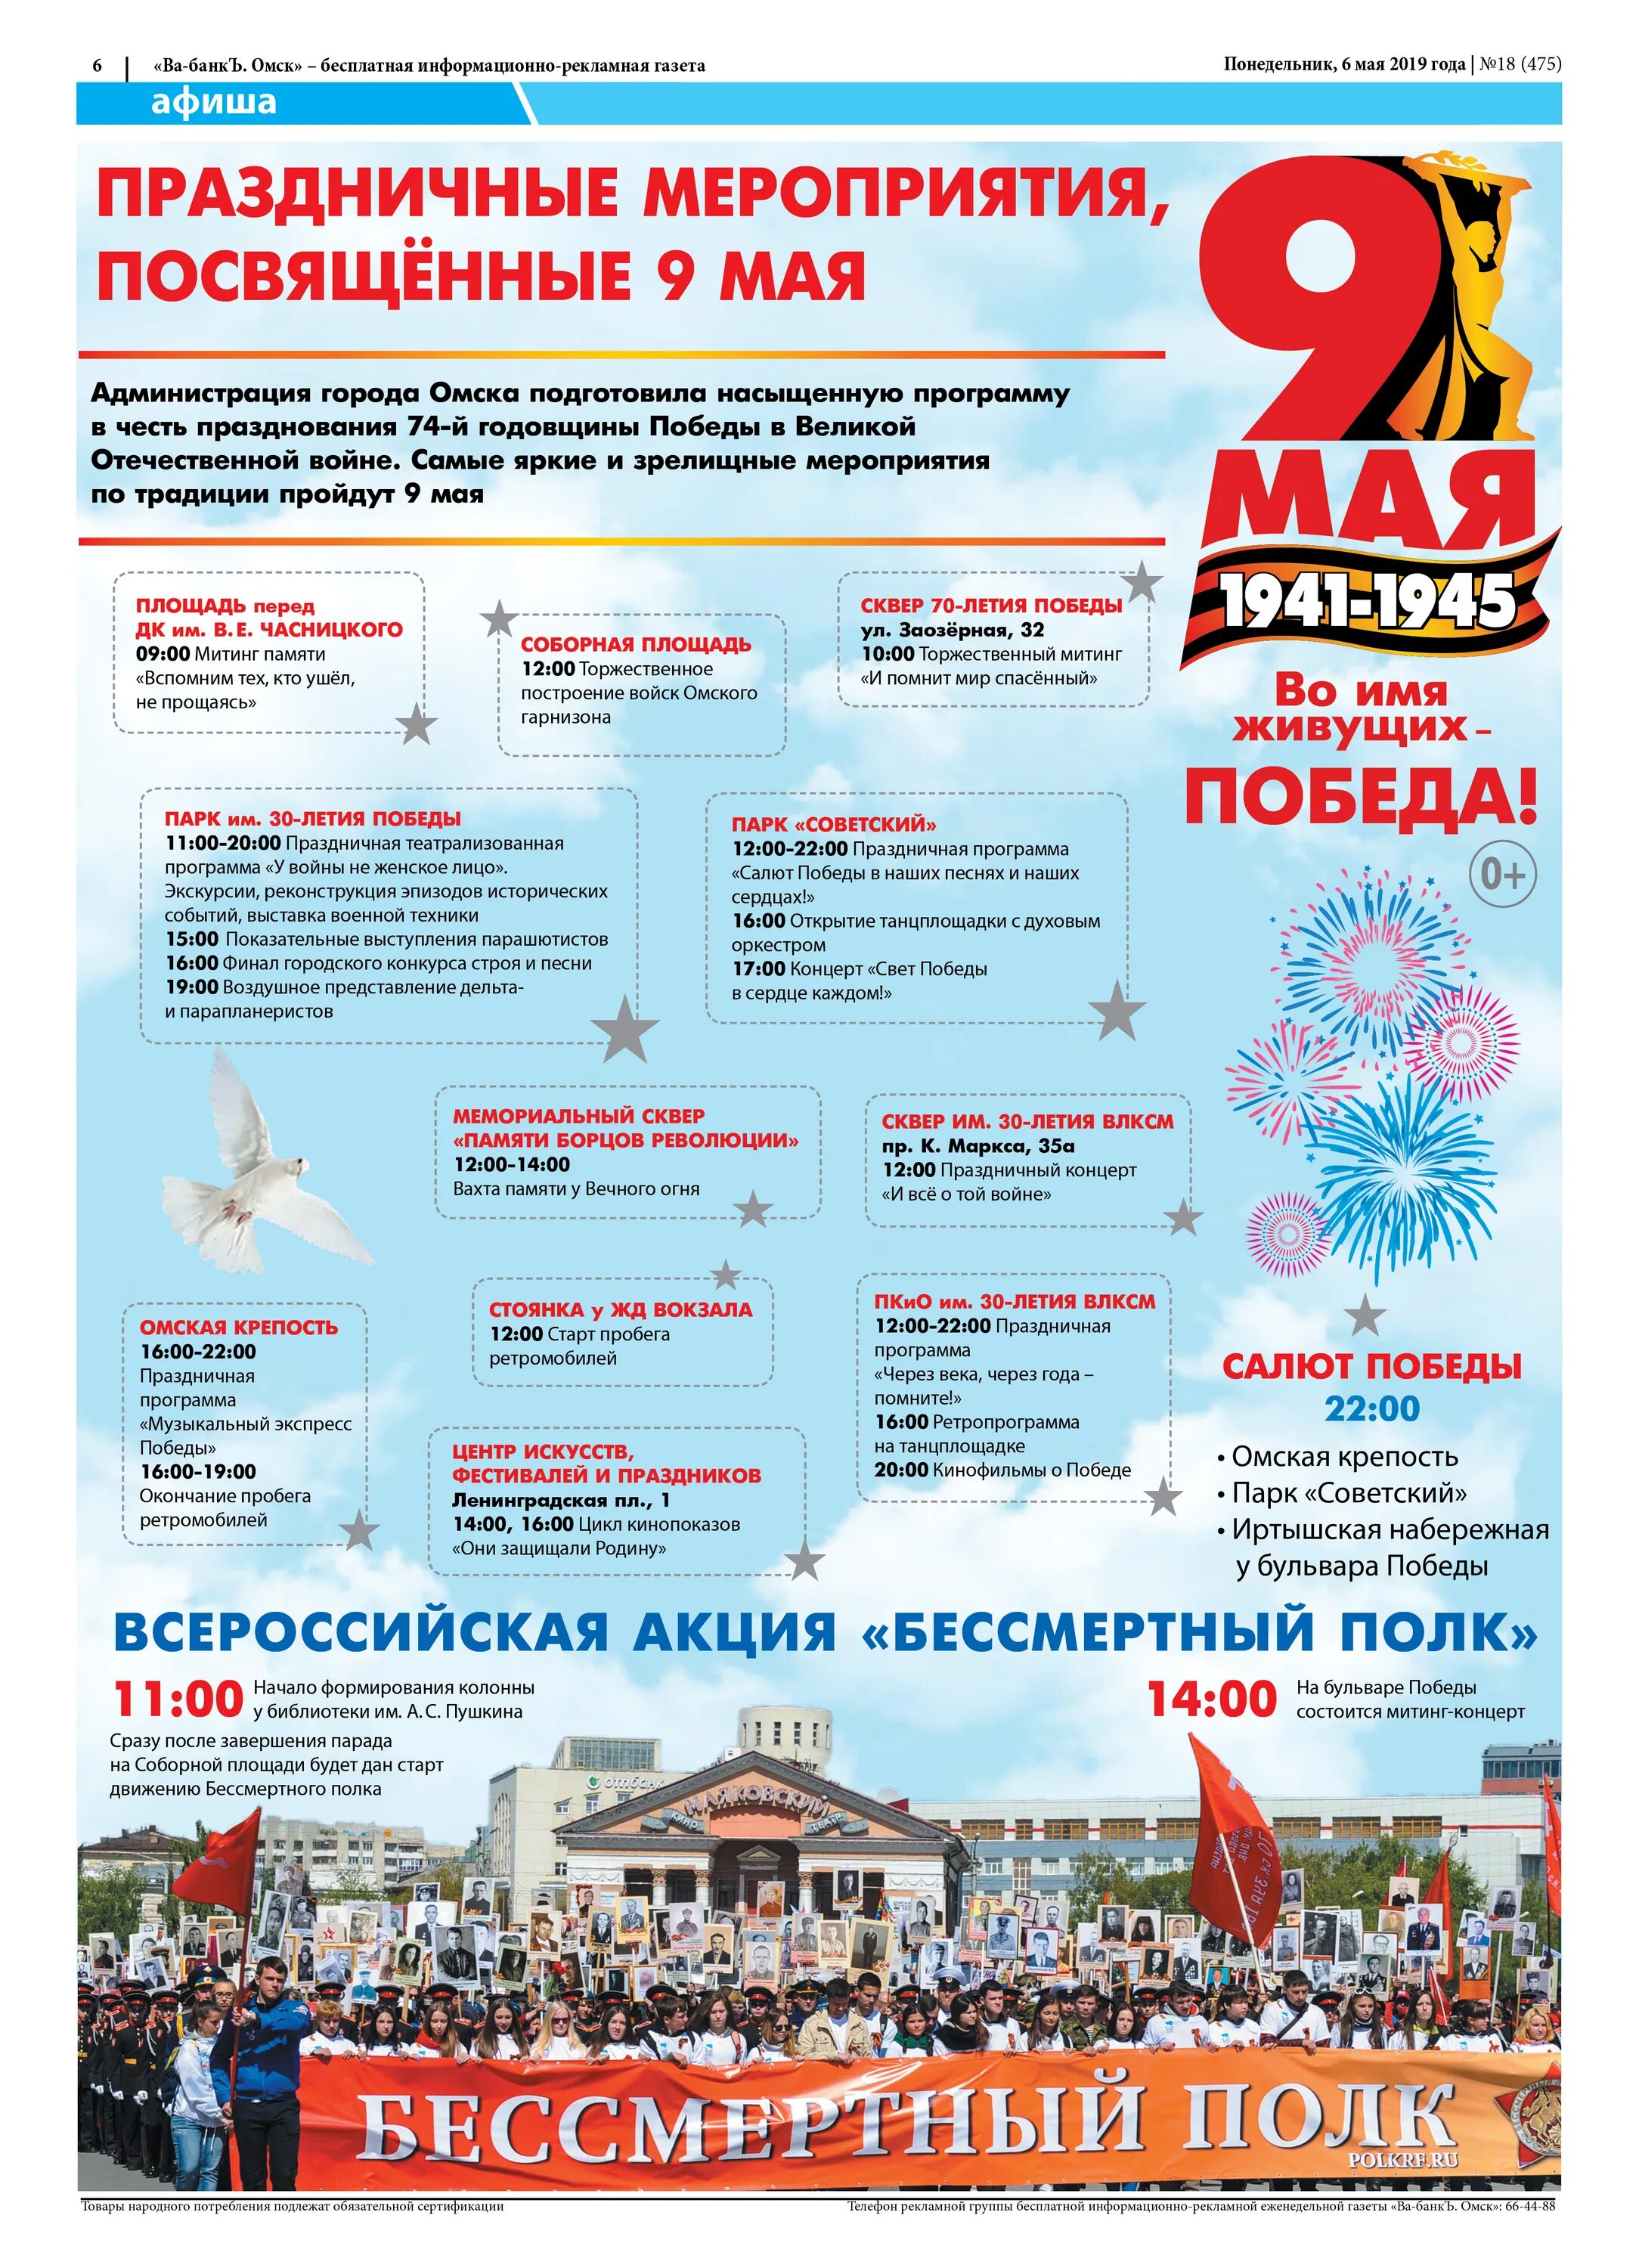 Программа 9 мая Омск. Праздничная программа на 9 мая в Омске. Расписание праздничных мероприятий в Омске на 9 мая. Мероприятия на 9 мая Омск 2013.